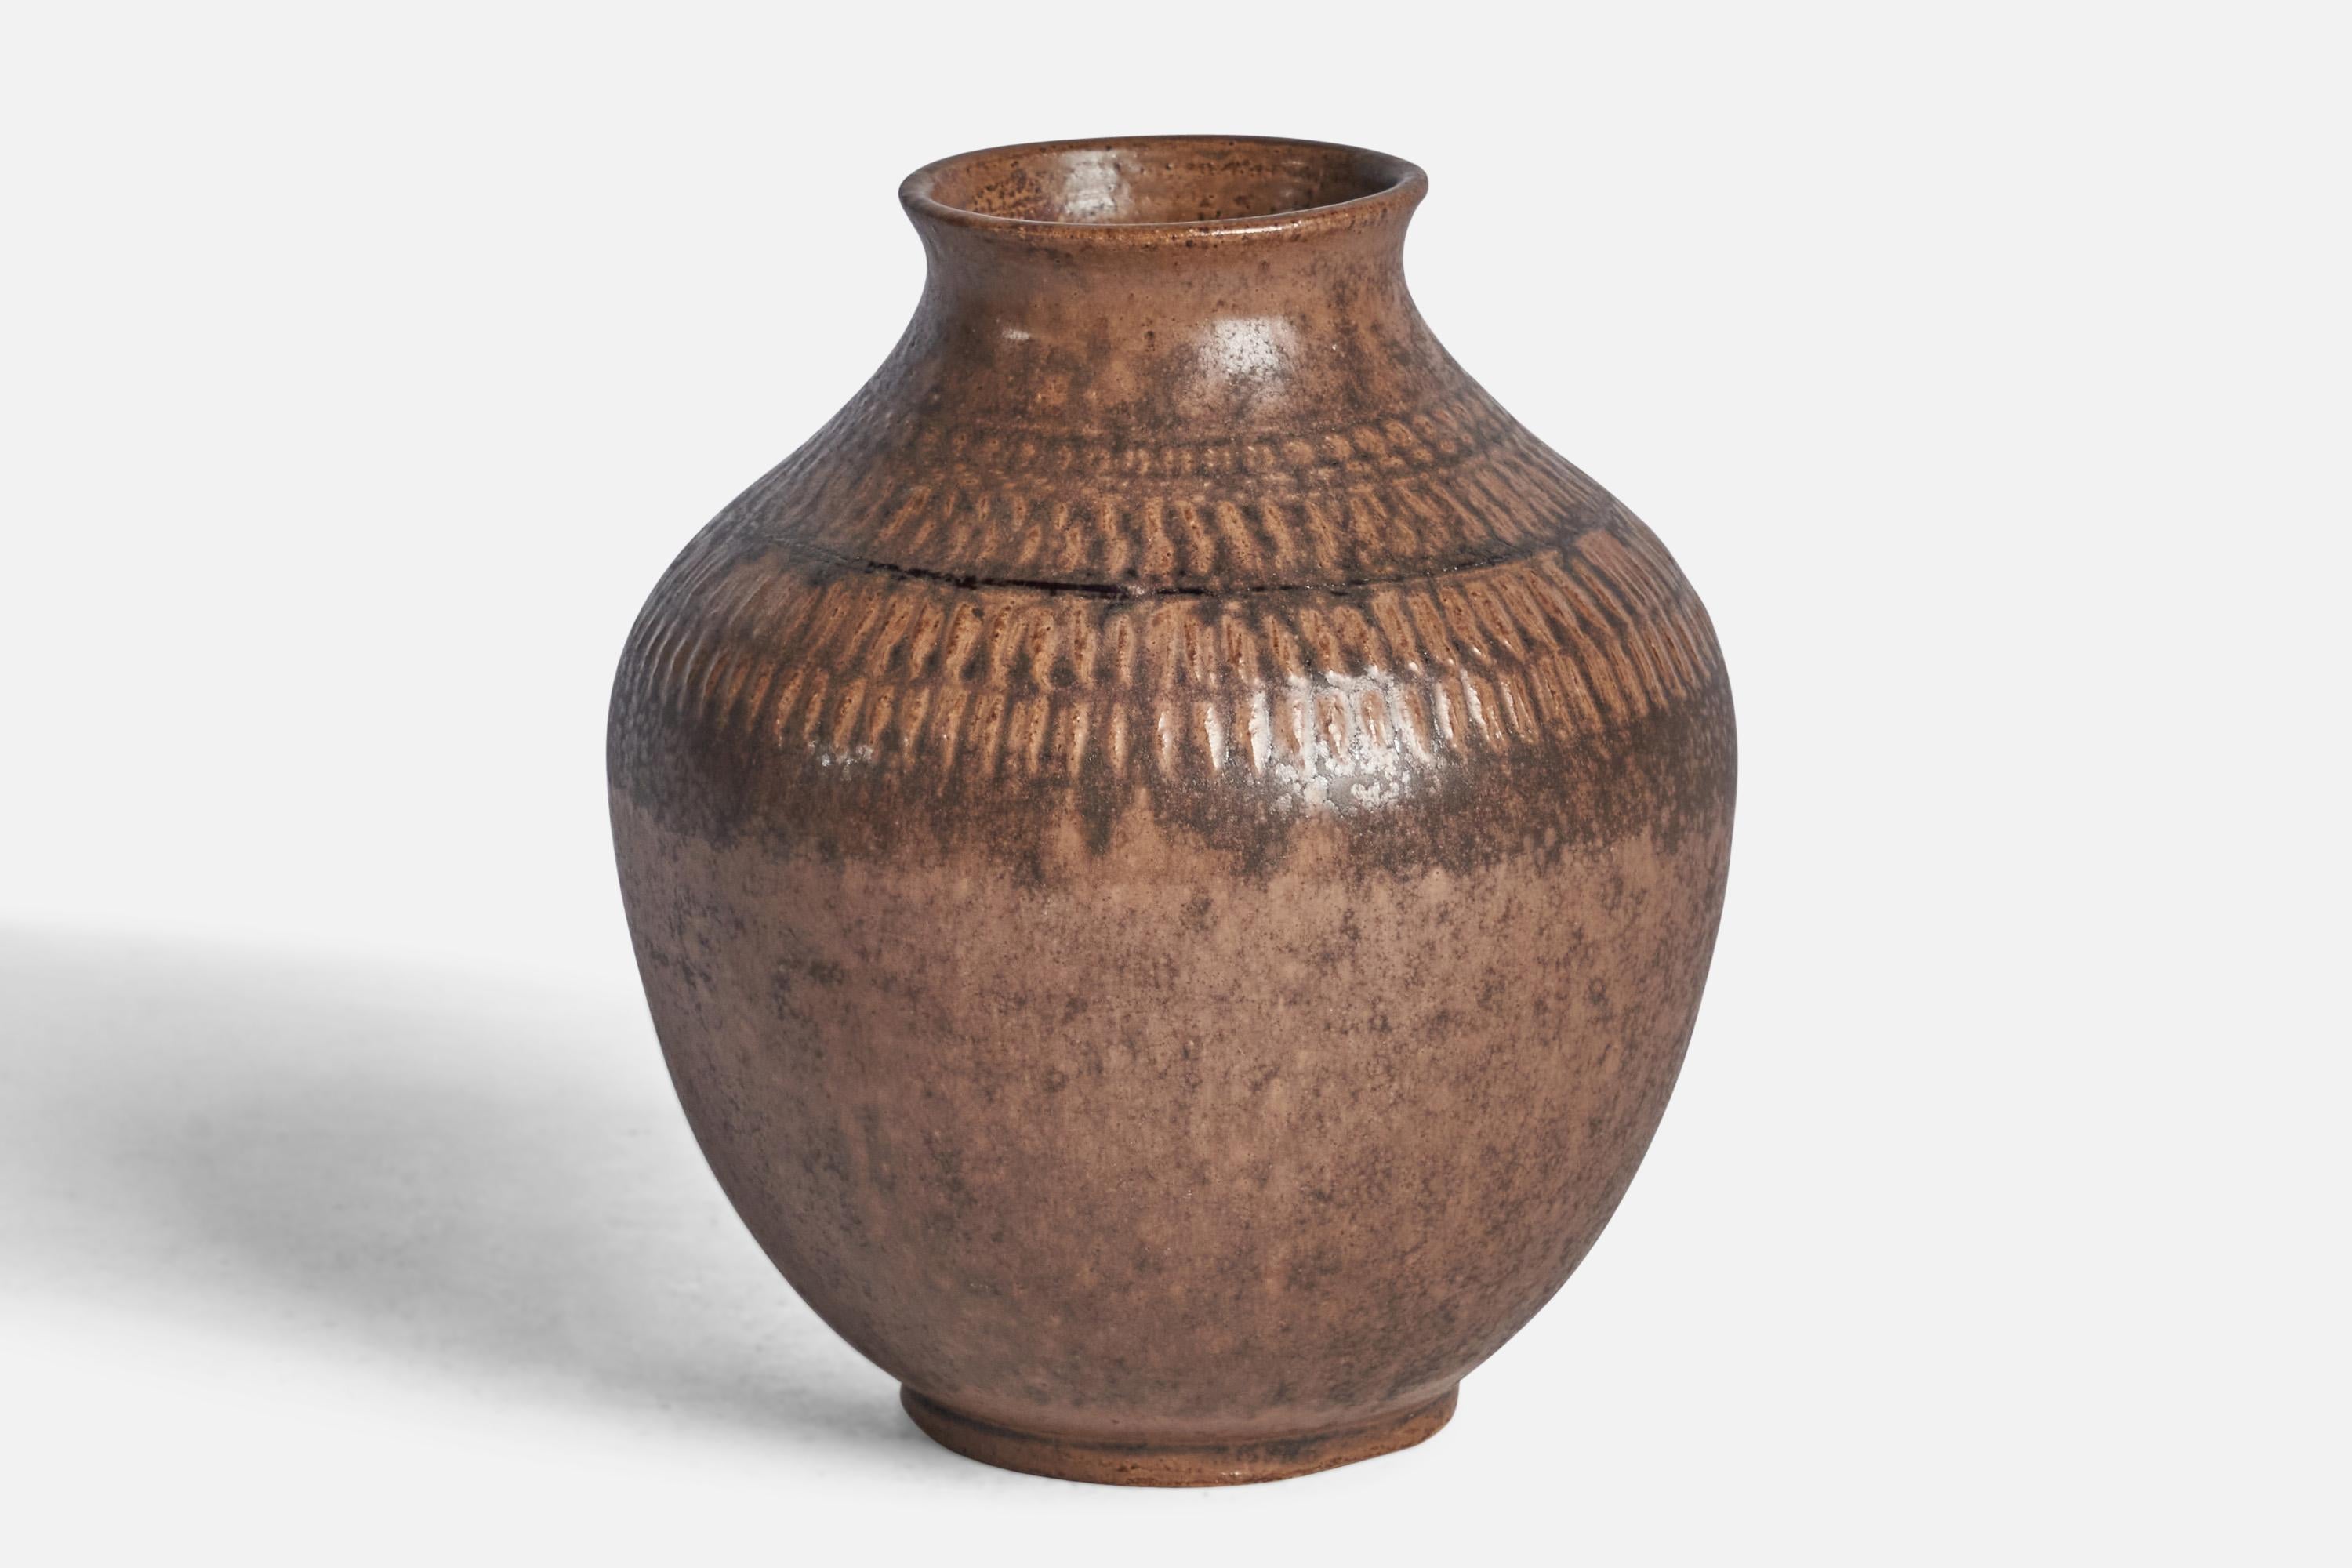 A brown-glazed incised stoneware vase designed and produced by Klase Höganäs, Sweden, 1970s.